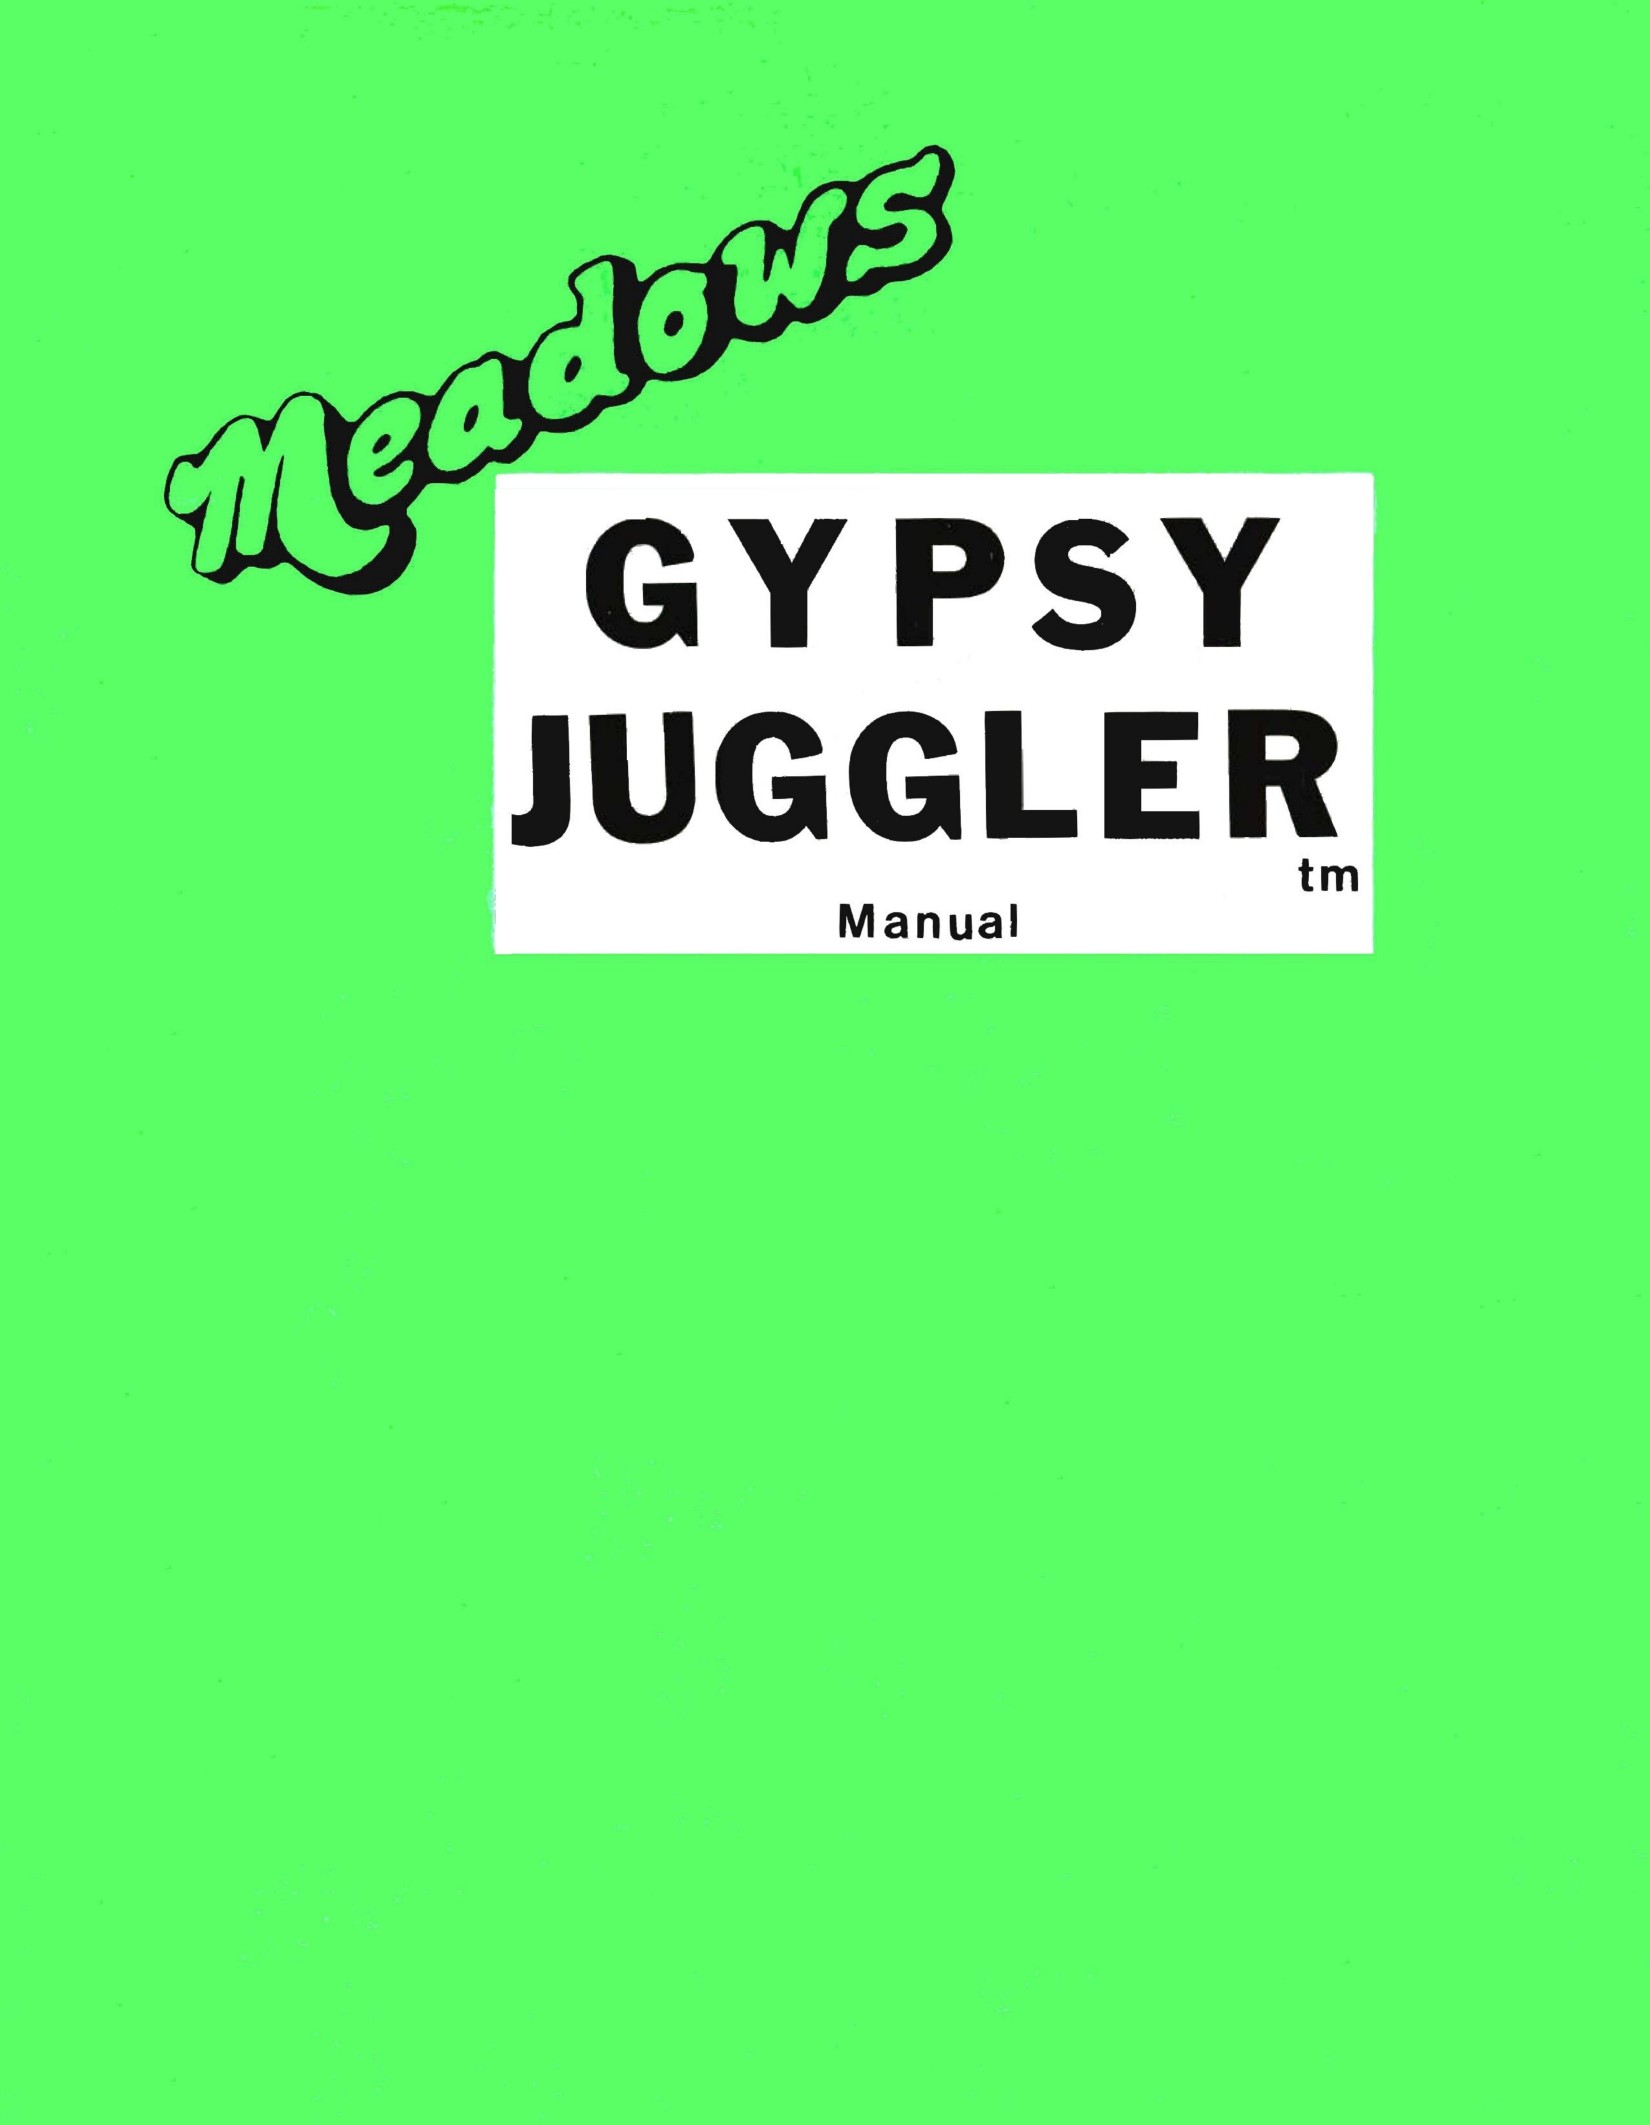 Meadows Gypsy Juggler